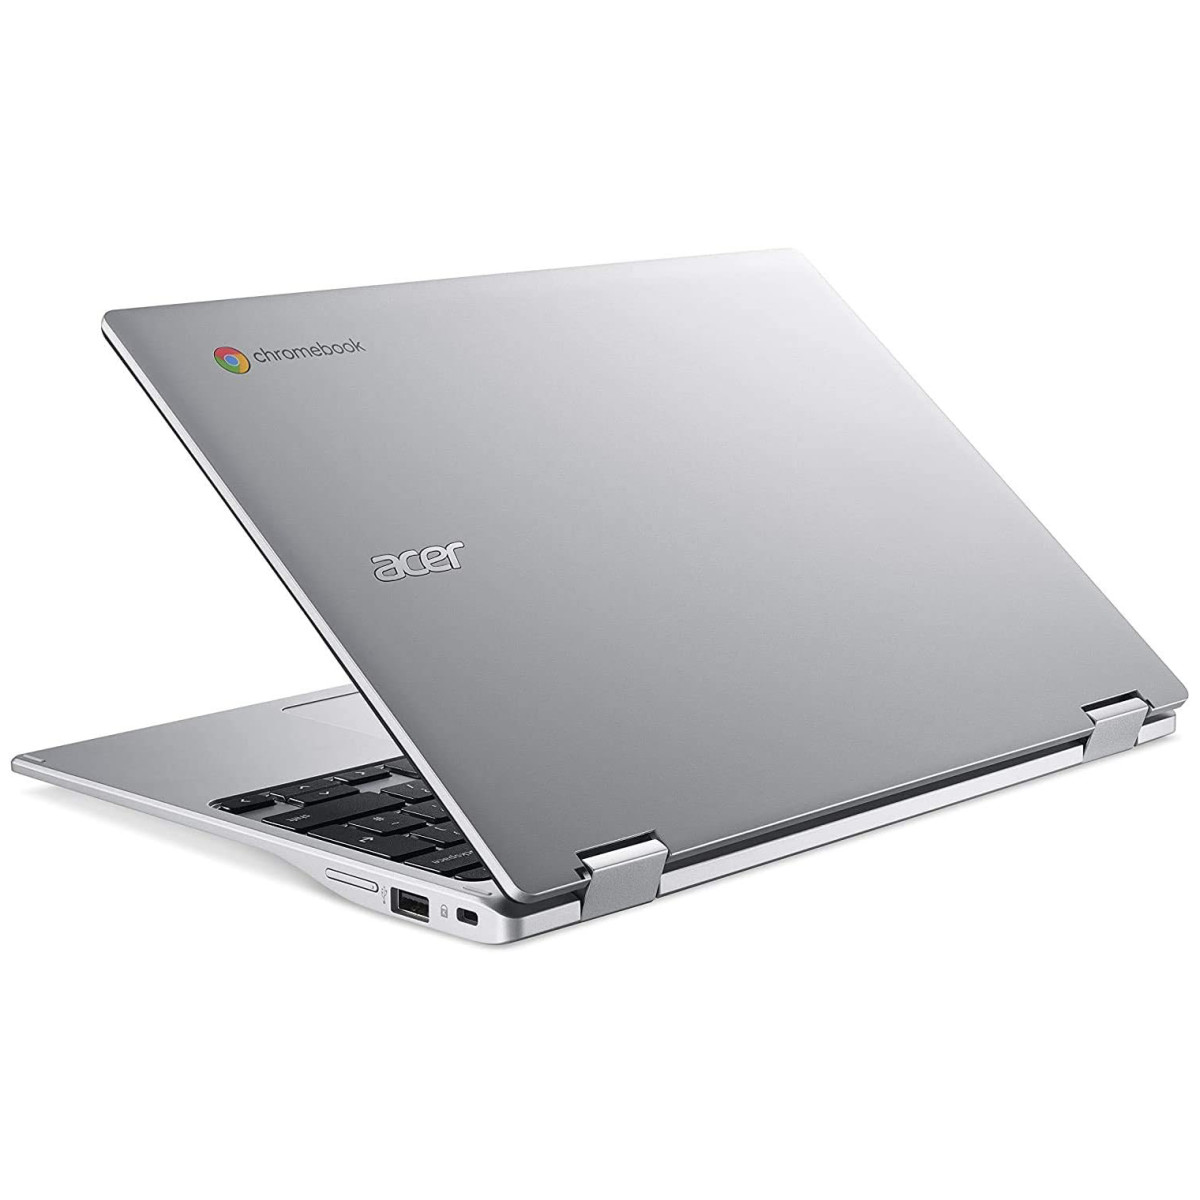 Tampa do Chromebook Acer na cor prata